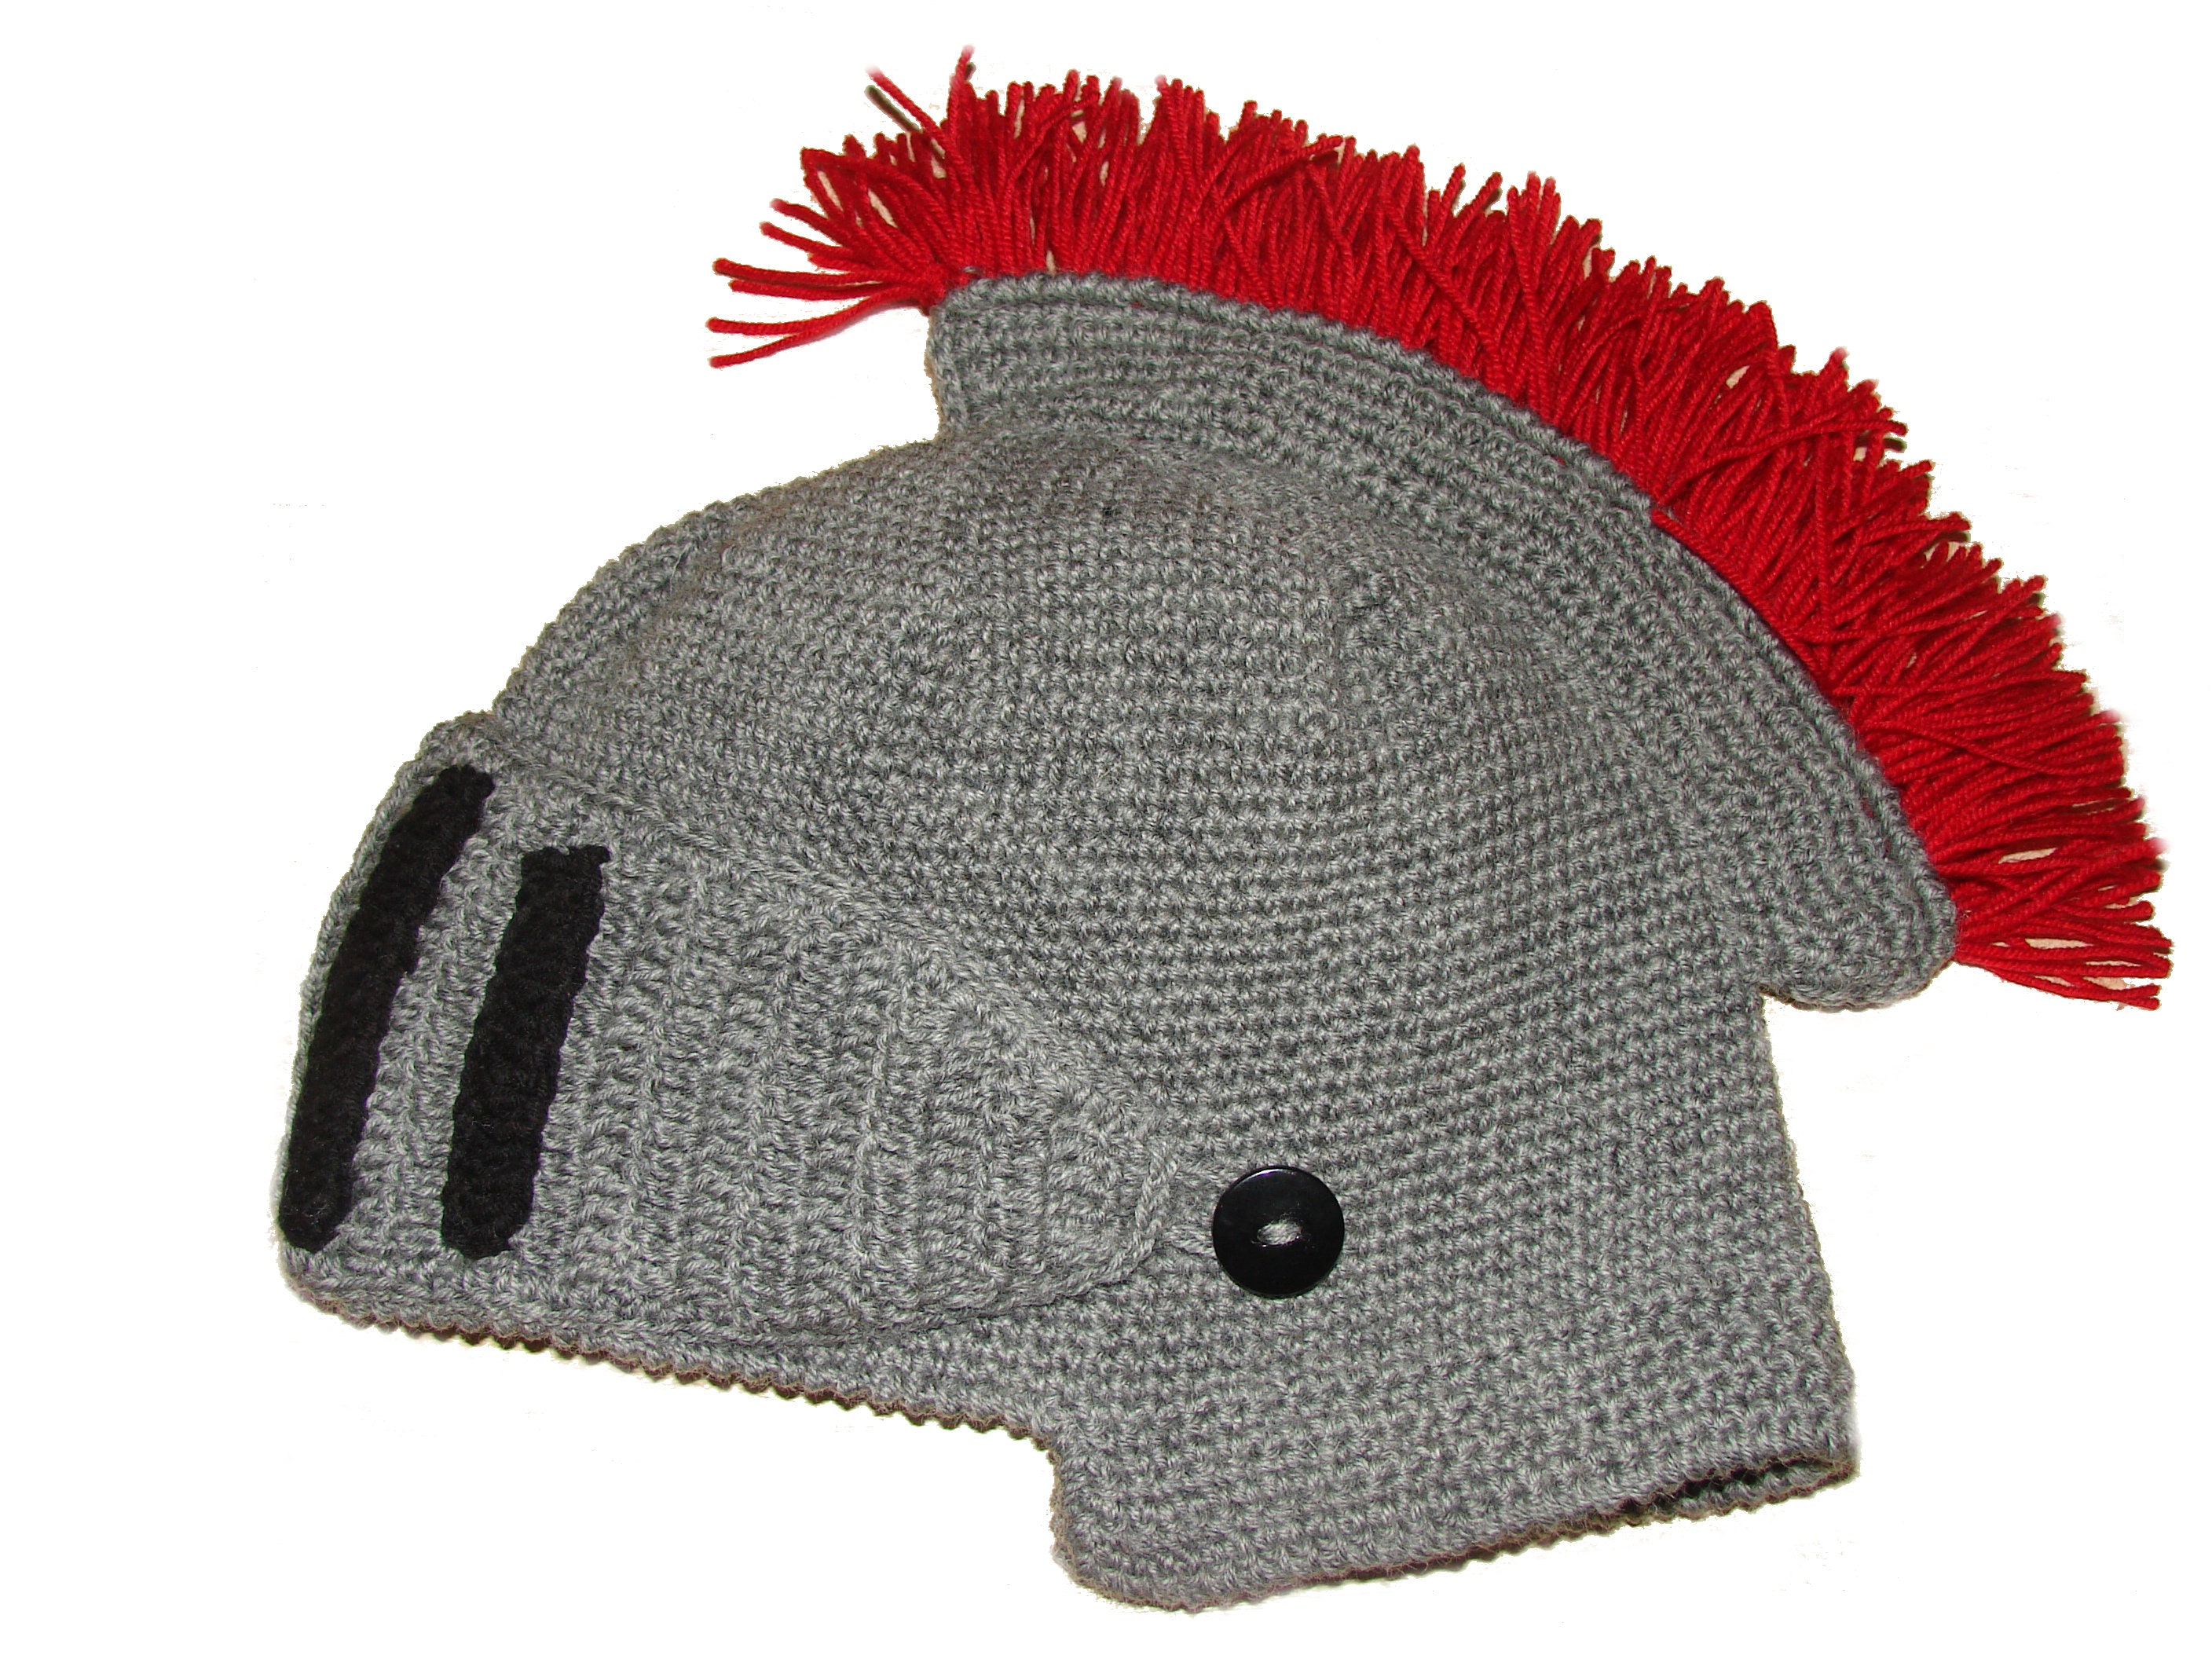 Helmet of the Knight Men Hat, Hand Made Crochet Winter Hat Christmas Gift  for Men, Boyfriend Gift, Ski Mask Gift for Him Husband Gift 